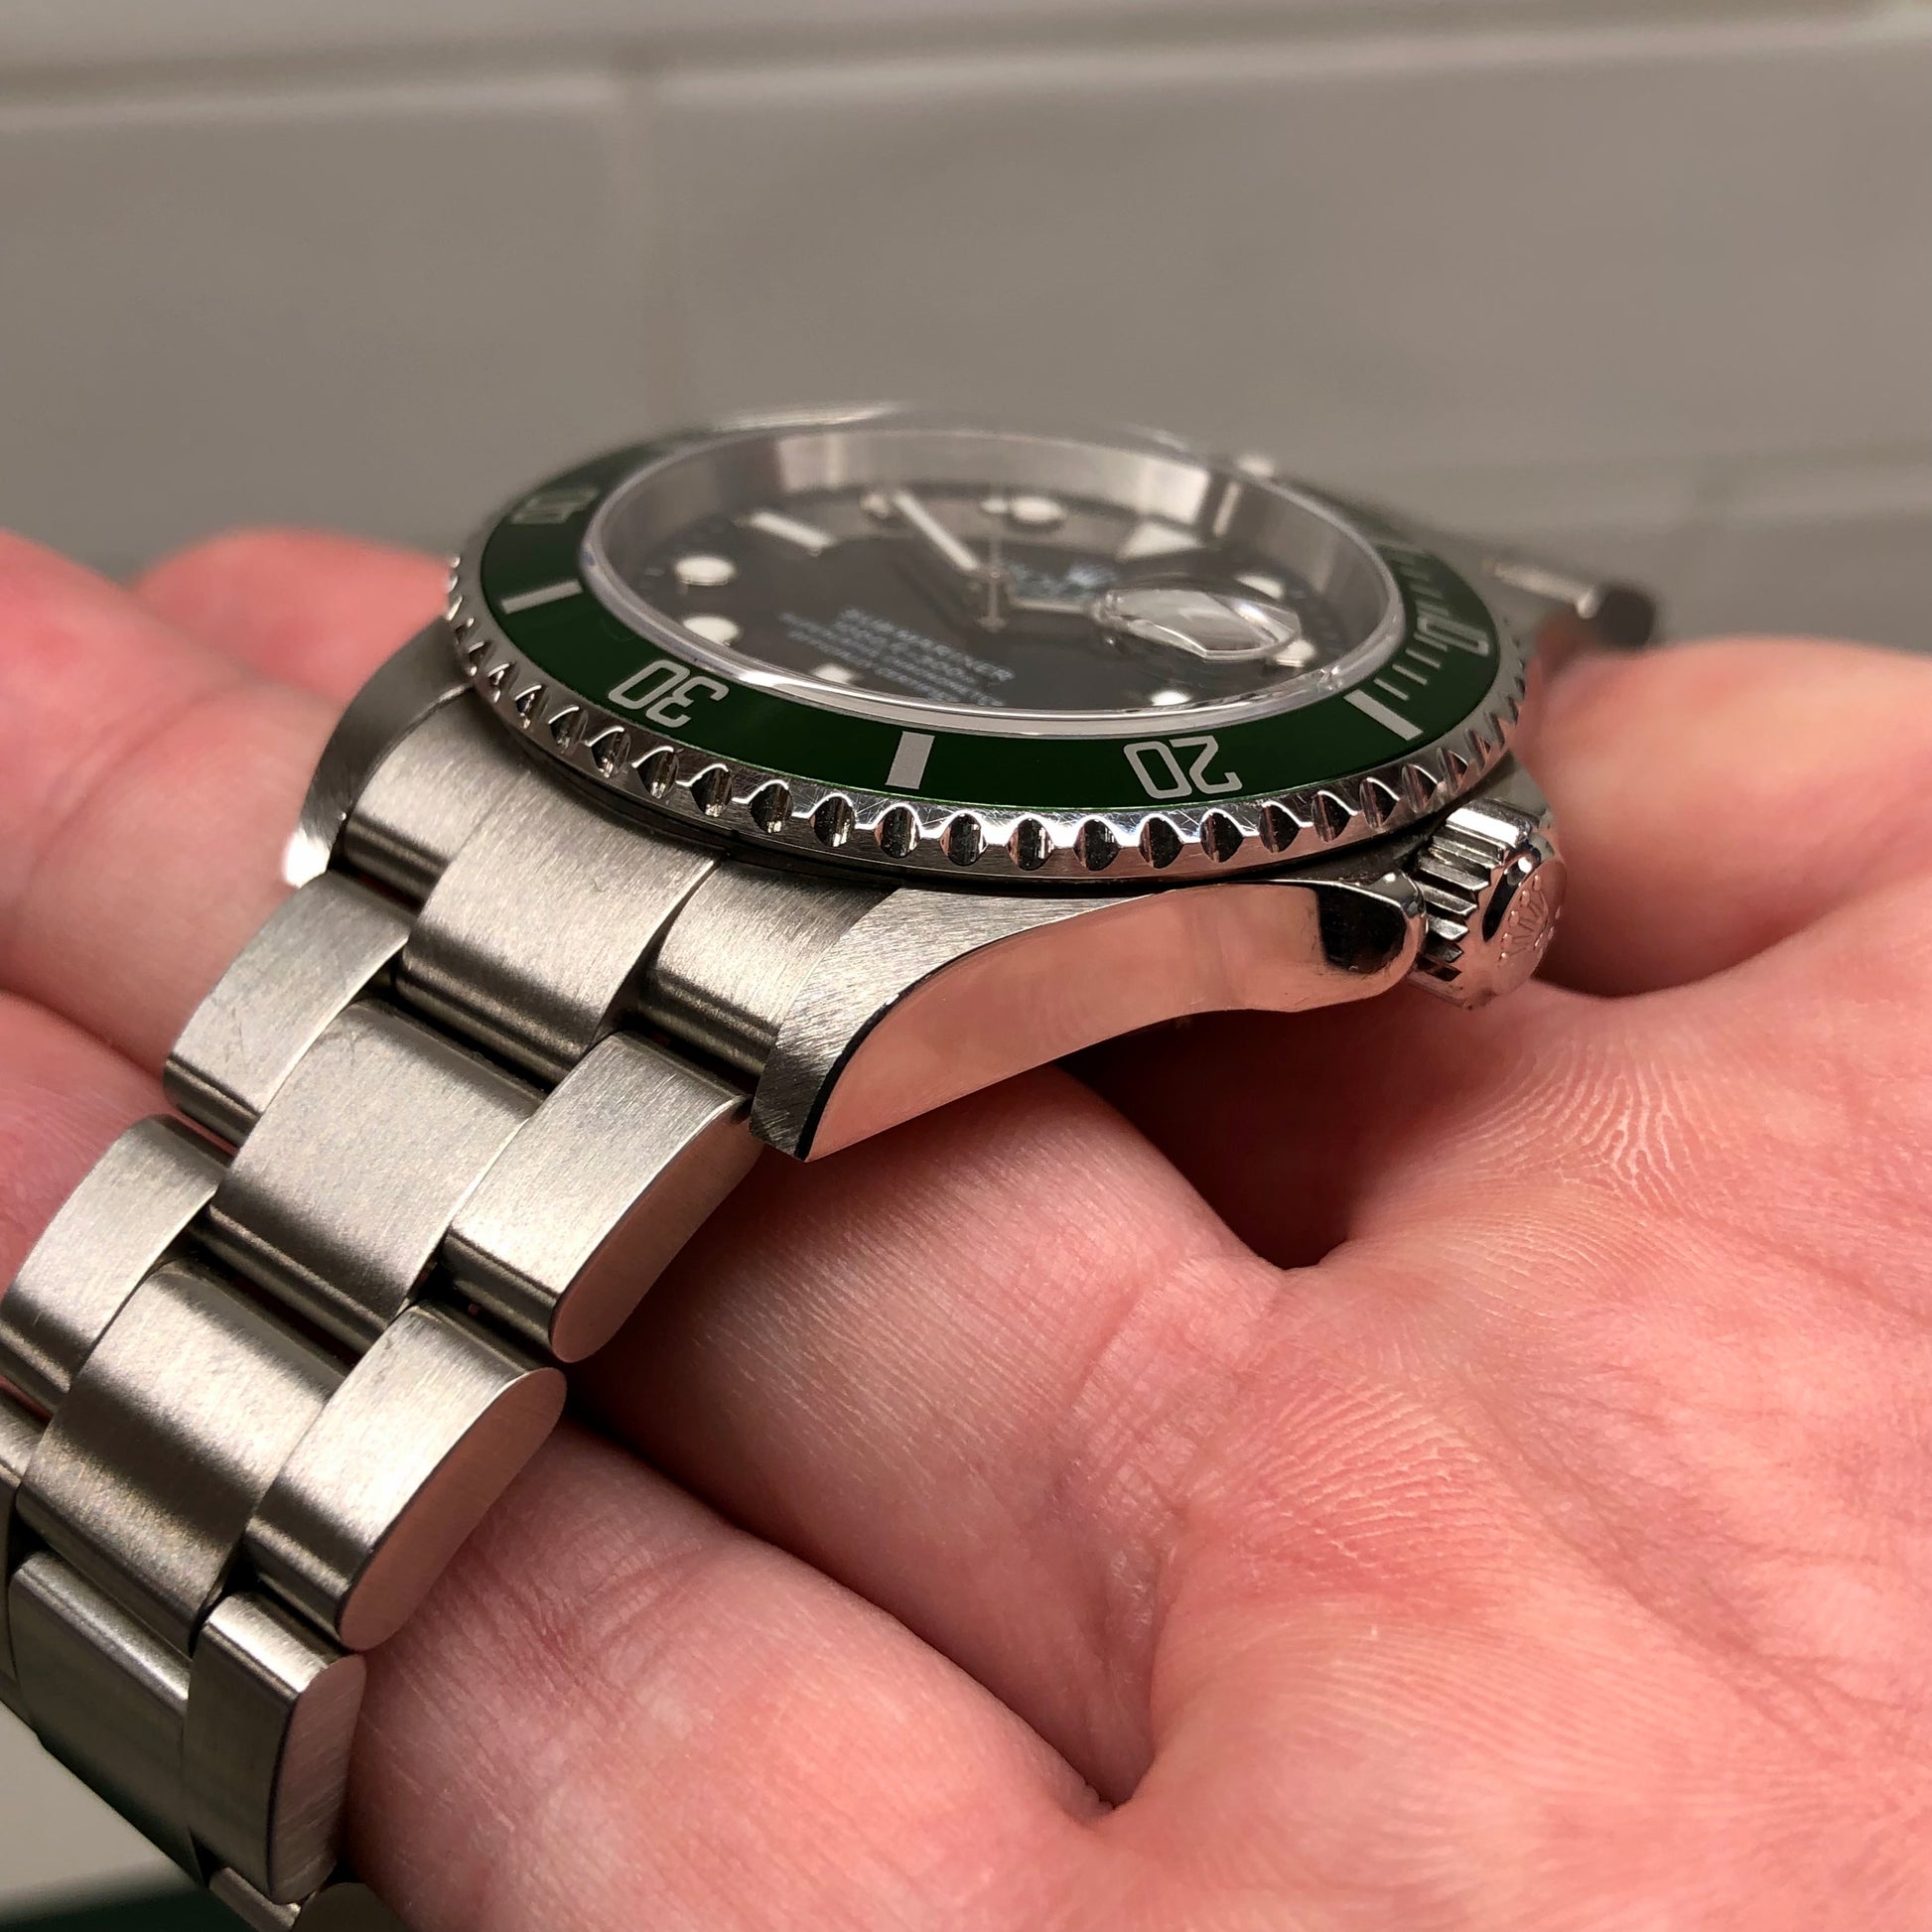 Rolex Submariner 16610LV Kermit Flat Wristwatch